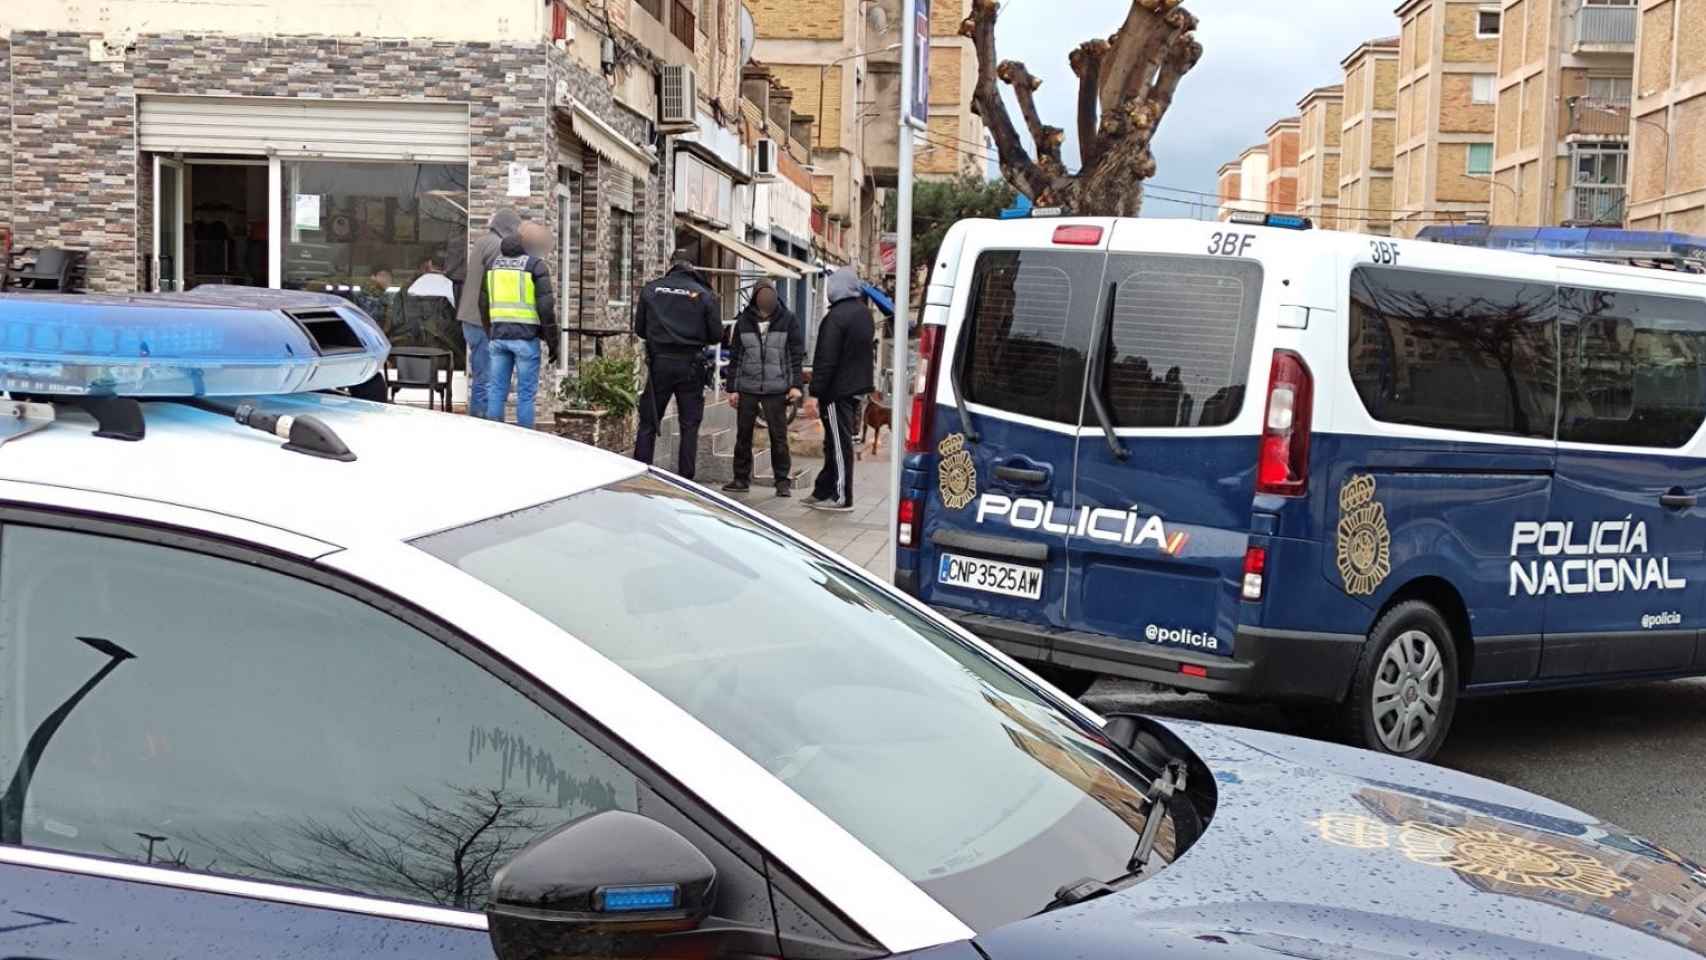 La Policía Nacional destaca la celeridad con que han detenido a los dos sospechosos del robo en Alicante.